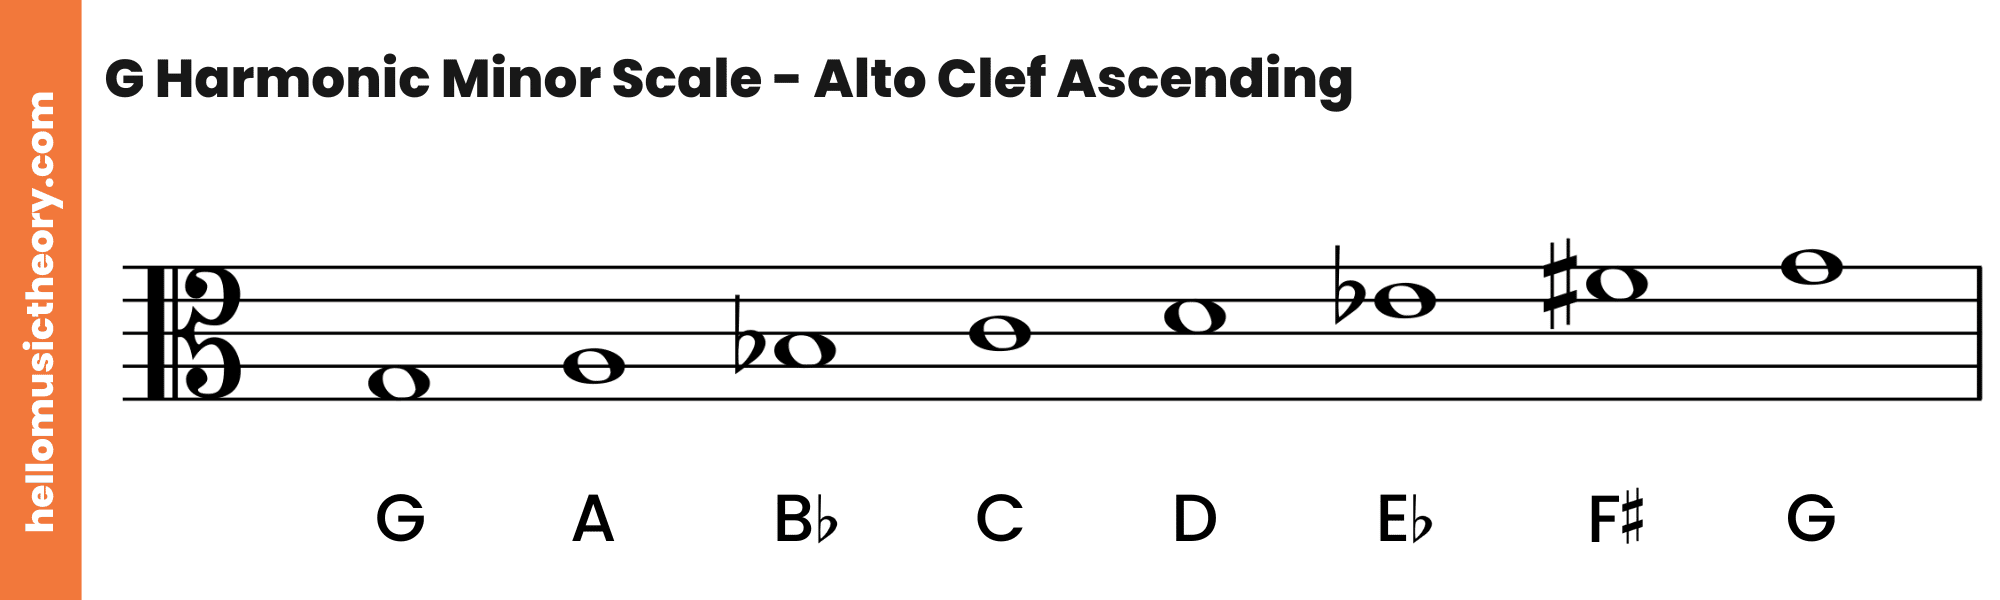 G Harmonic Minor Scale Alto Clef Ascending